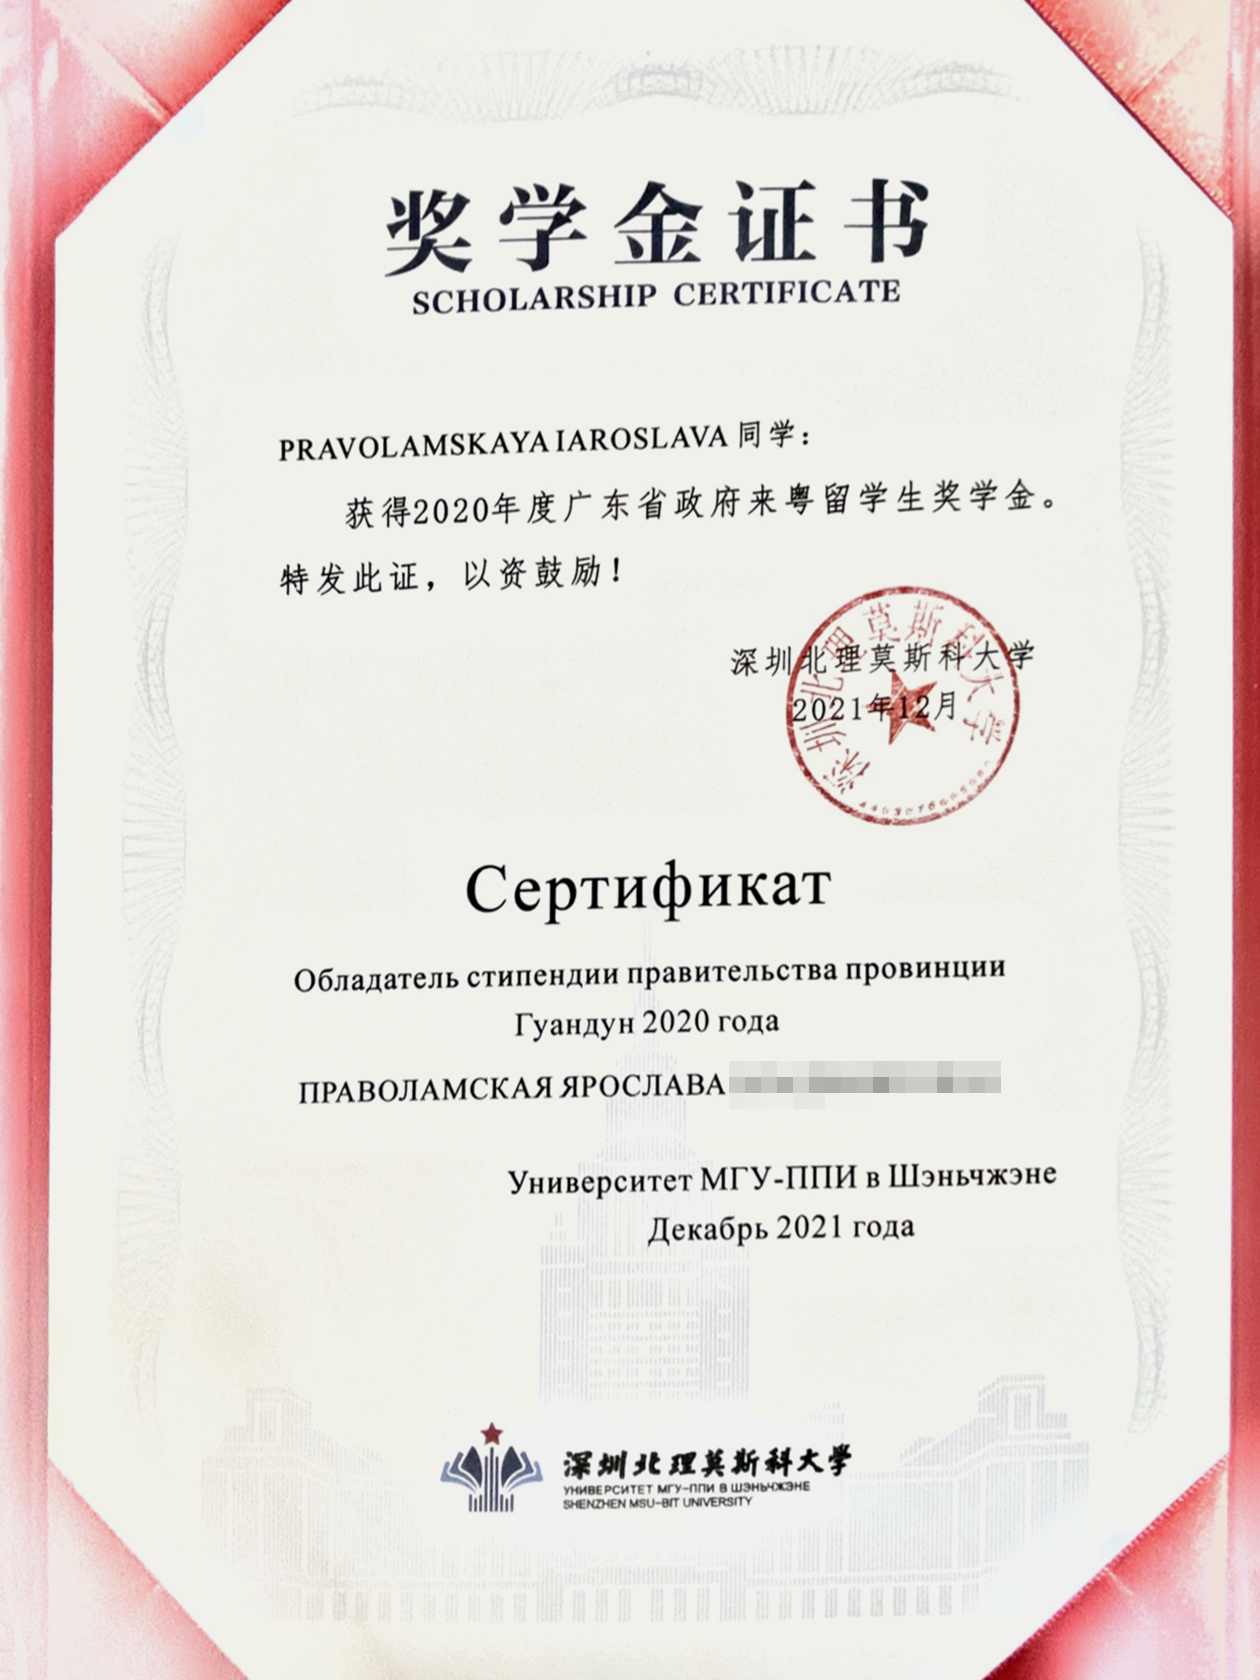 Сертификат, подтверждающий, что я получила стипендию правительства провинции Гуандун